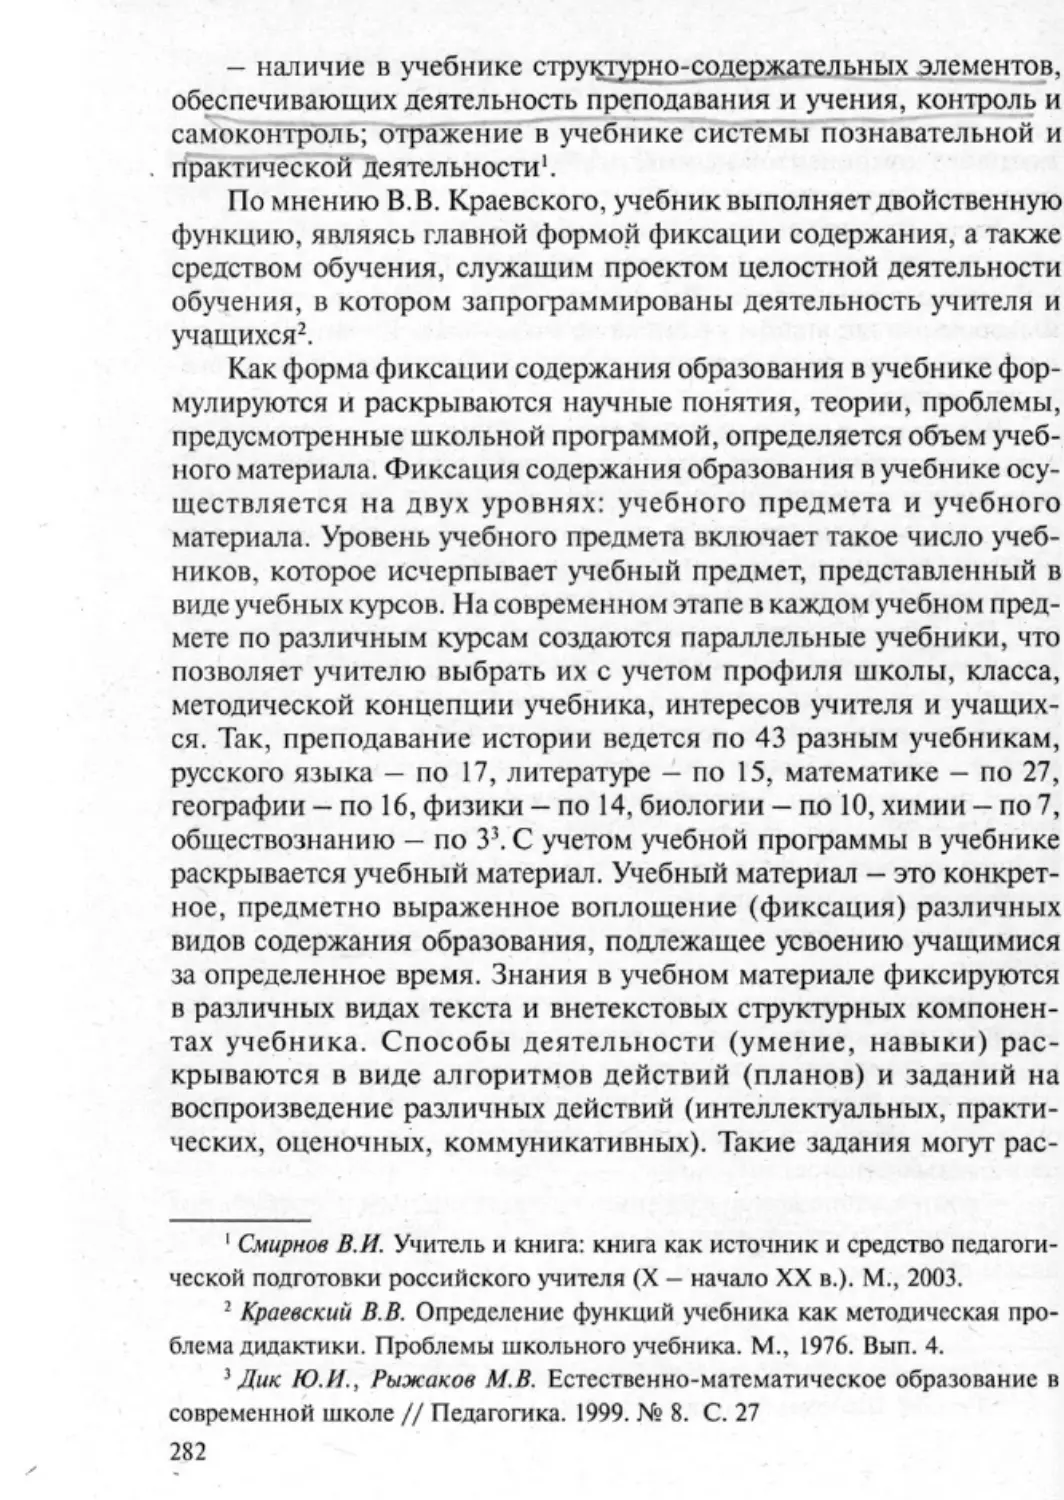 Загрекова Л.В., Николаева В.В - 0283